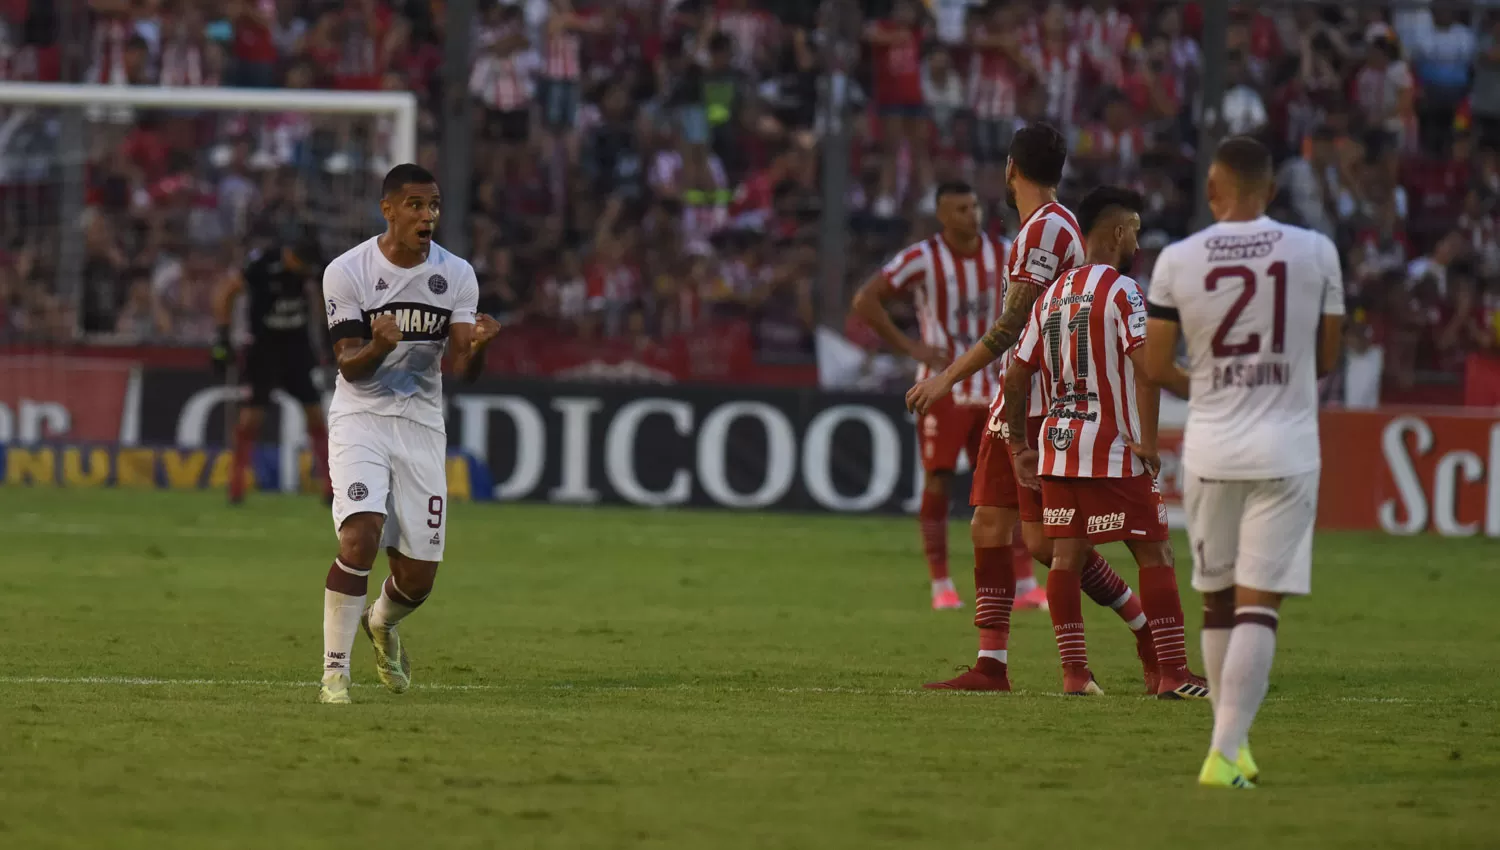 Sand grita el gol y los jugadores de San Martín se lamentan. LA GACETA/FOTO DE DIEGO ARÁOZ